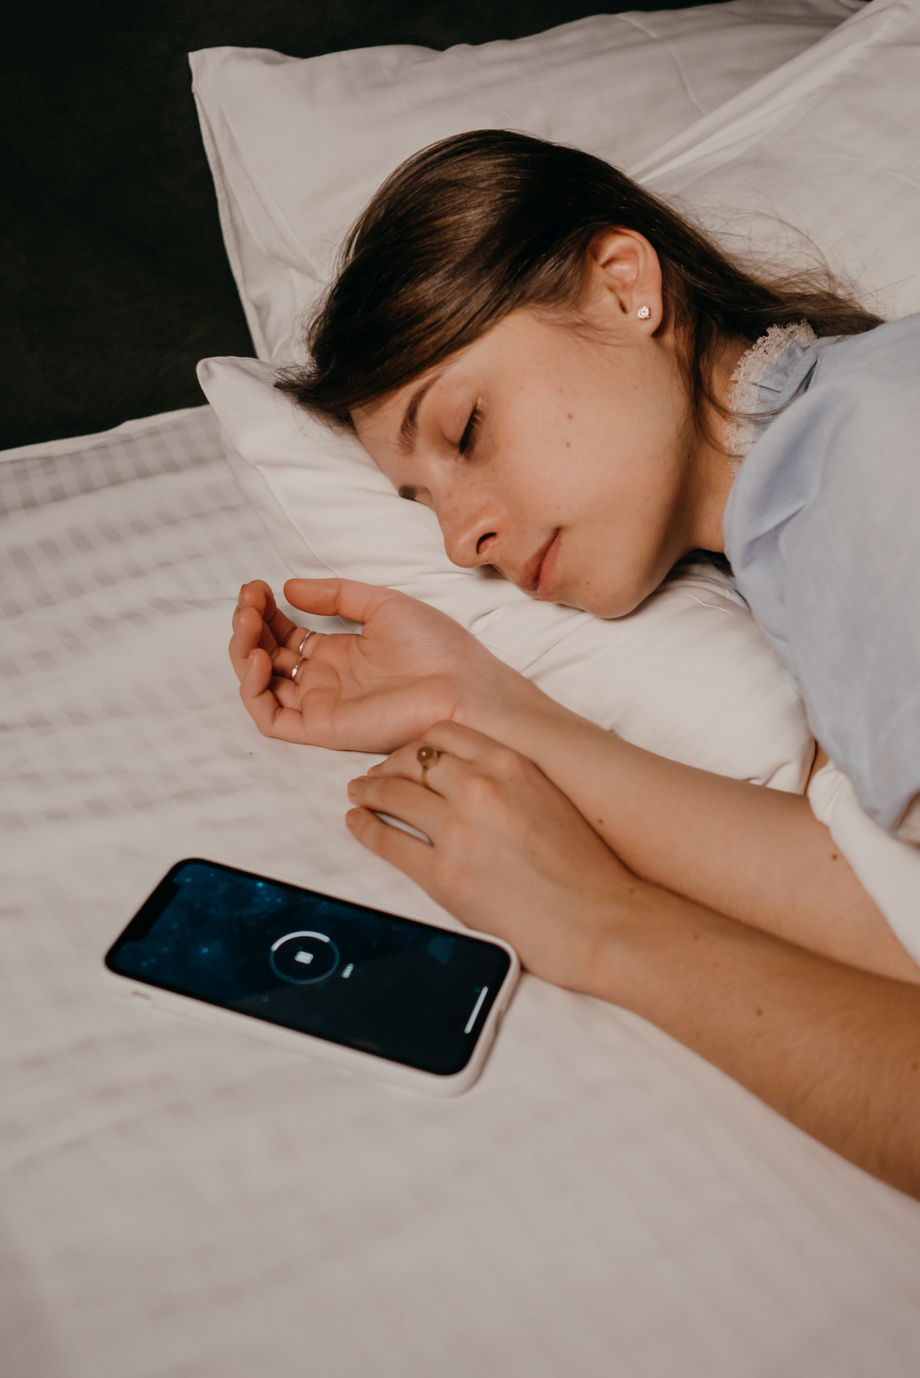 Phone beside an Asleep Woman 